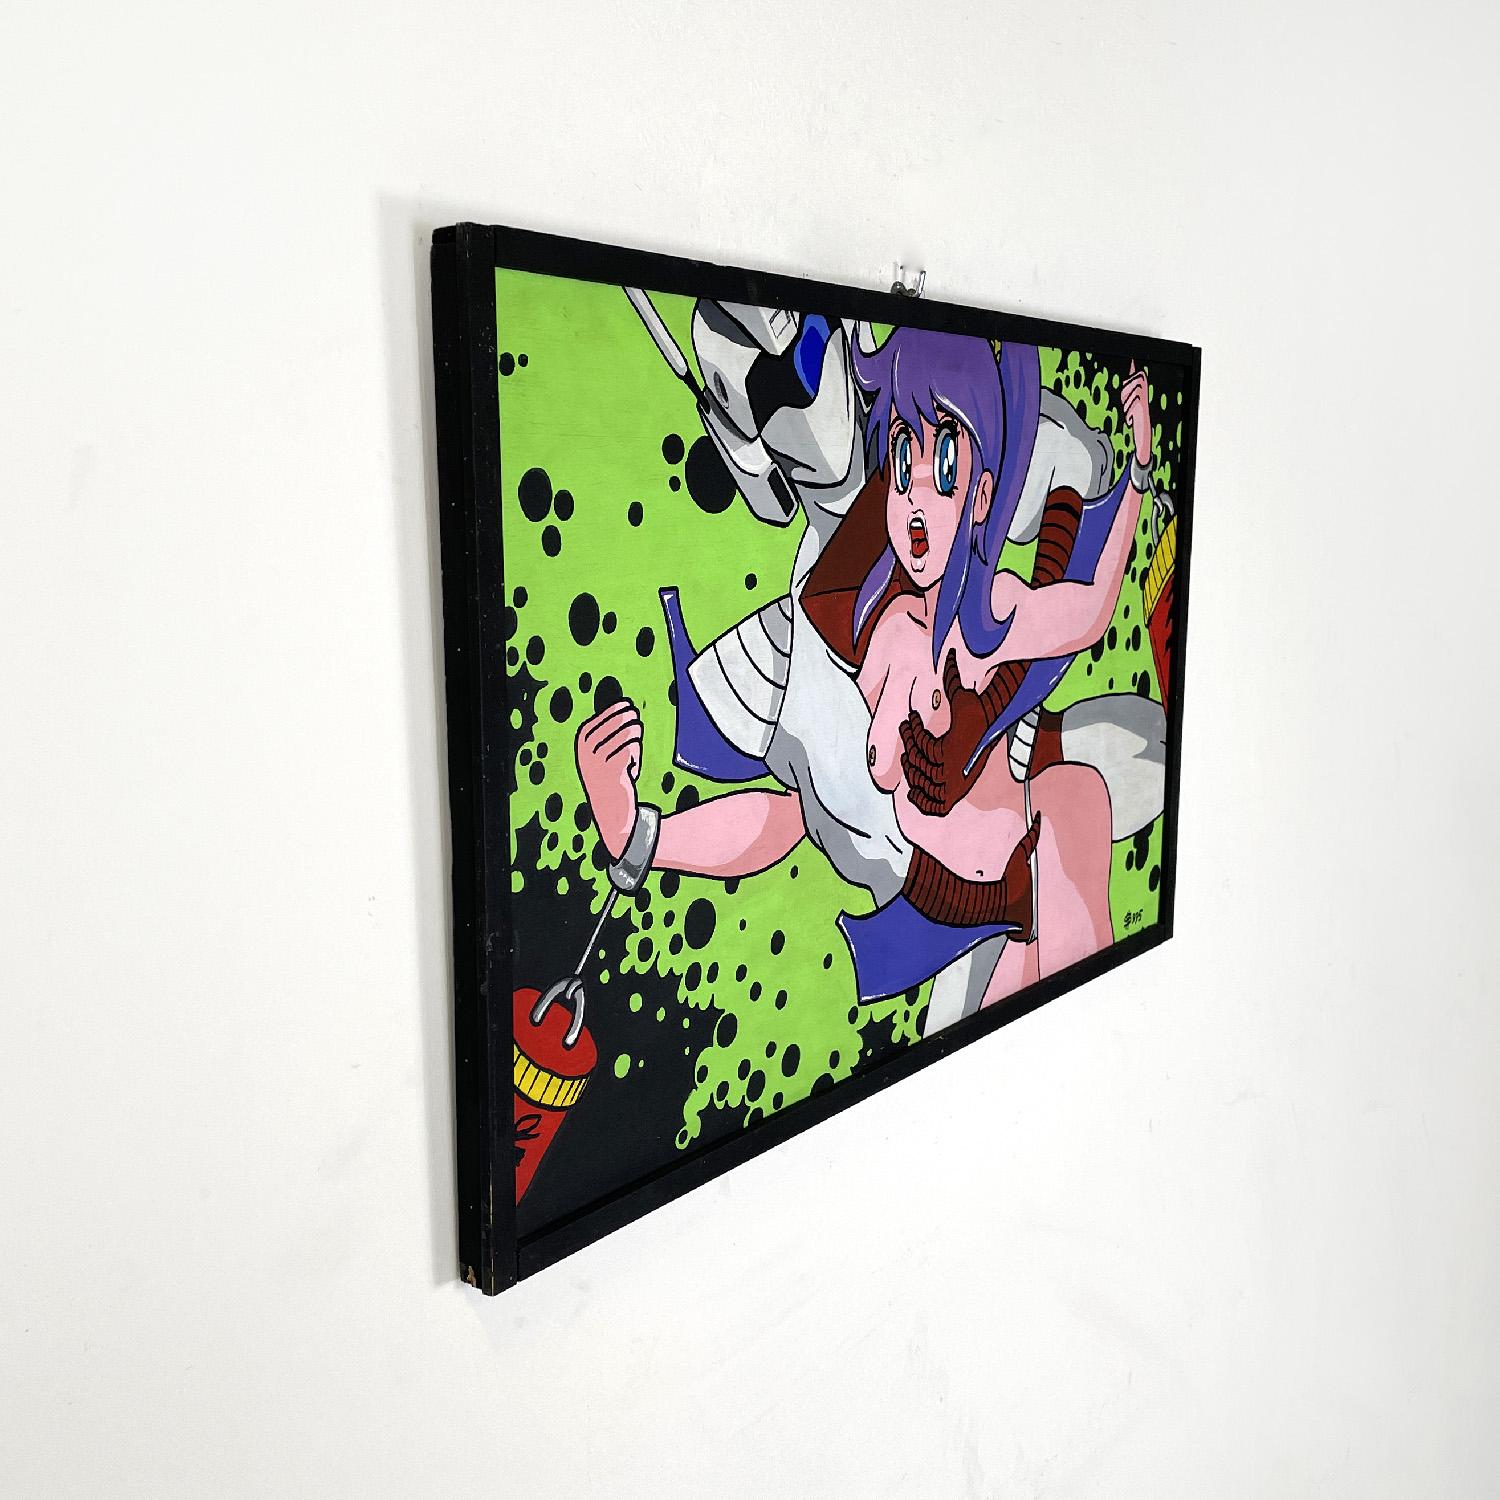 Peinture moderne italienne érotique de manga japonais par Gianni S99, années 1990
Peinture acrylique sur panneau à thème érotique, représentant des personnages emblématiques de la culture pop manga japonaise. La composition présente des couleurs